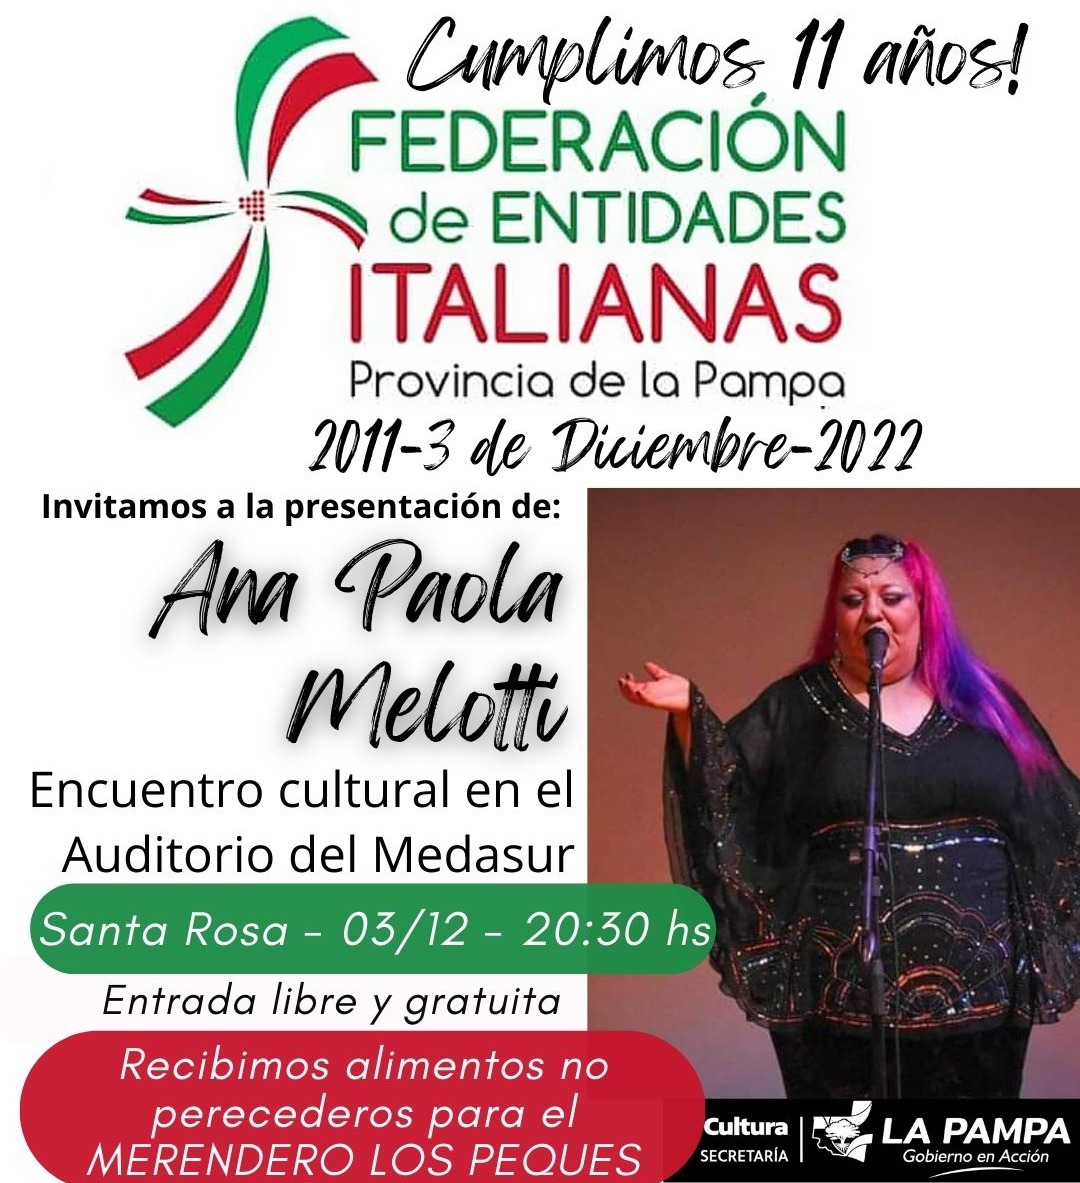 11 aniversario Federación de Entidades Italianas